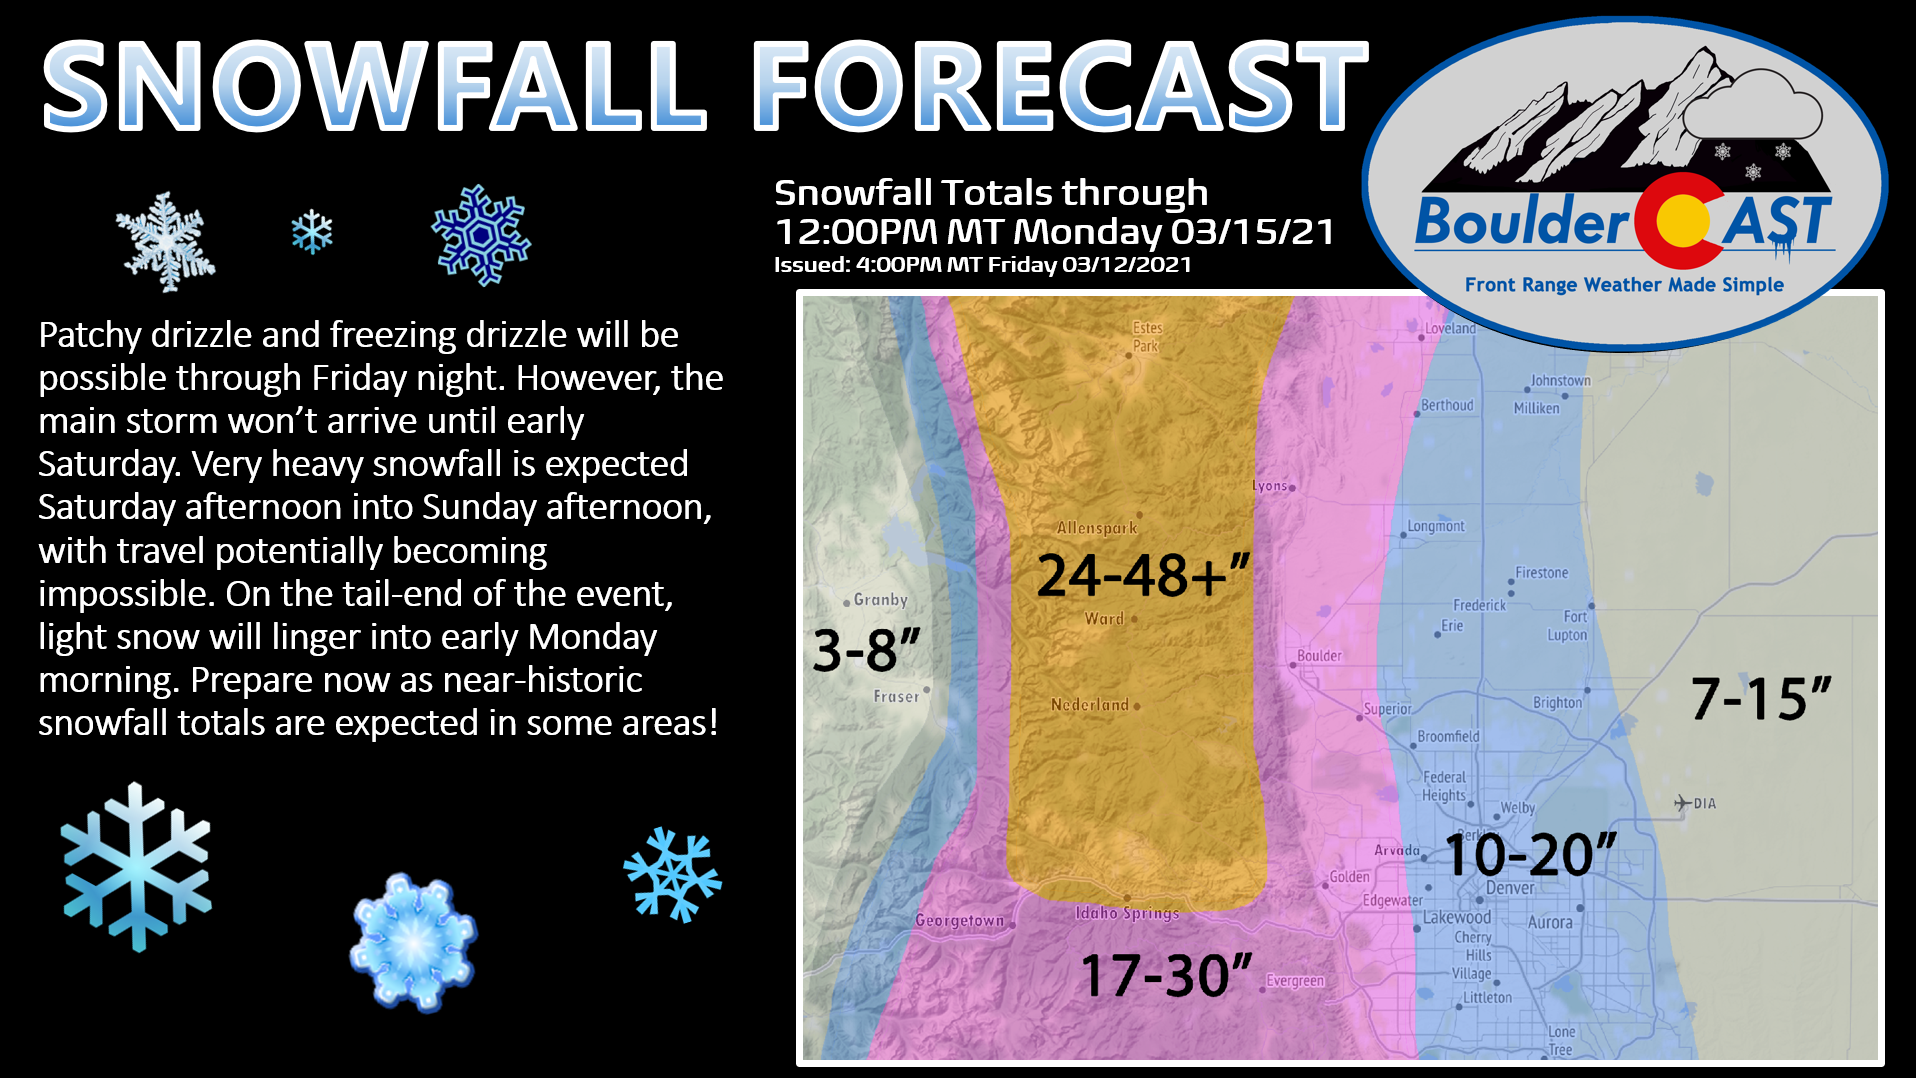 Snowfall-Forecast-Headline-Denver-Colora